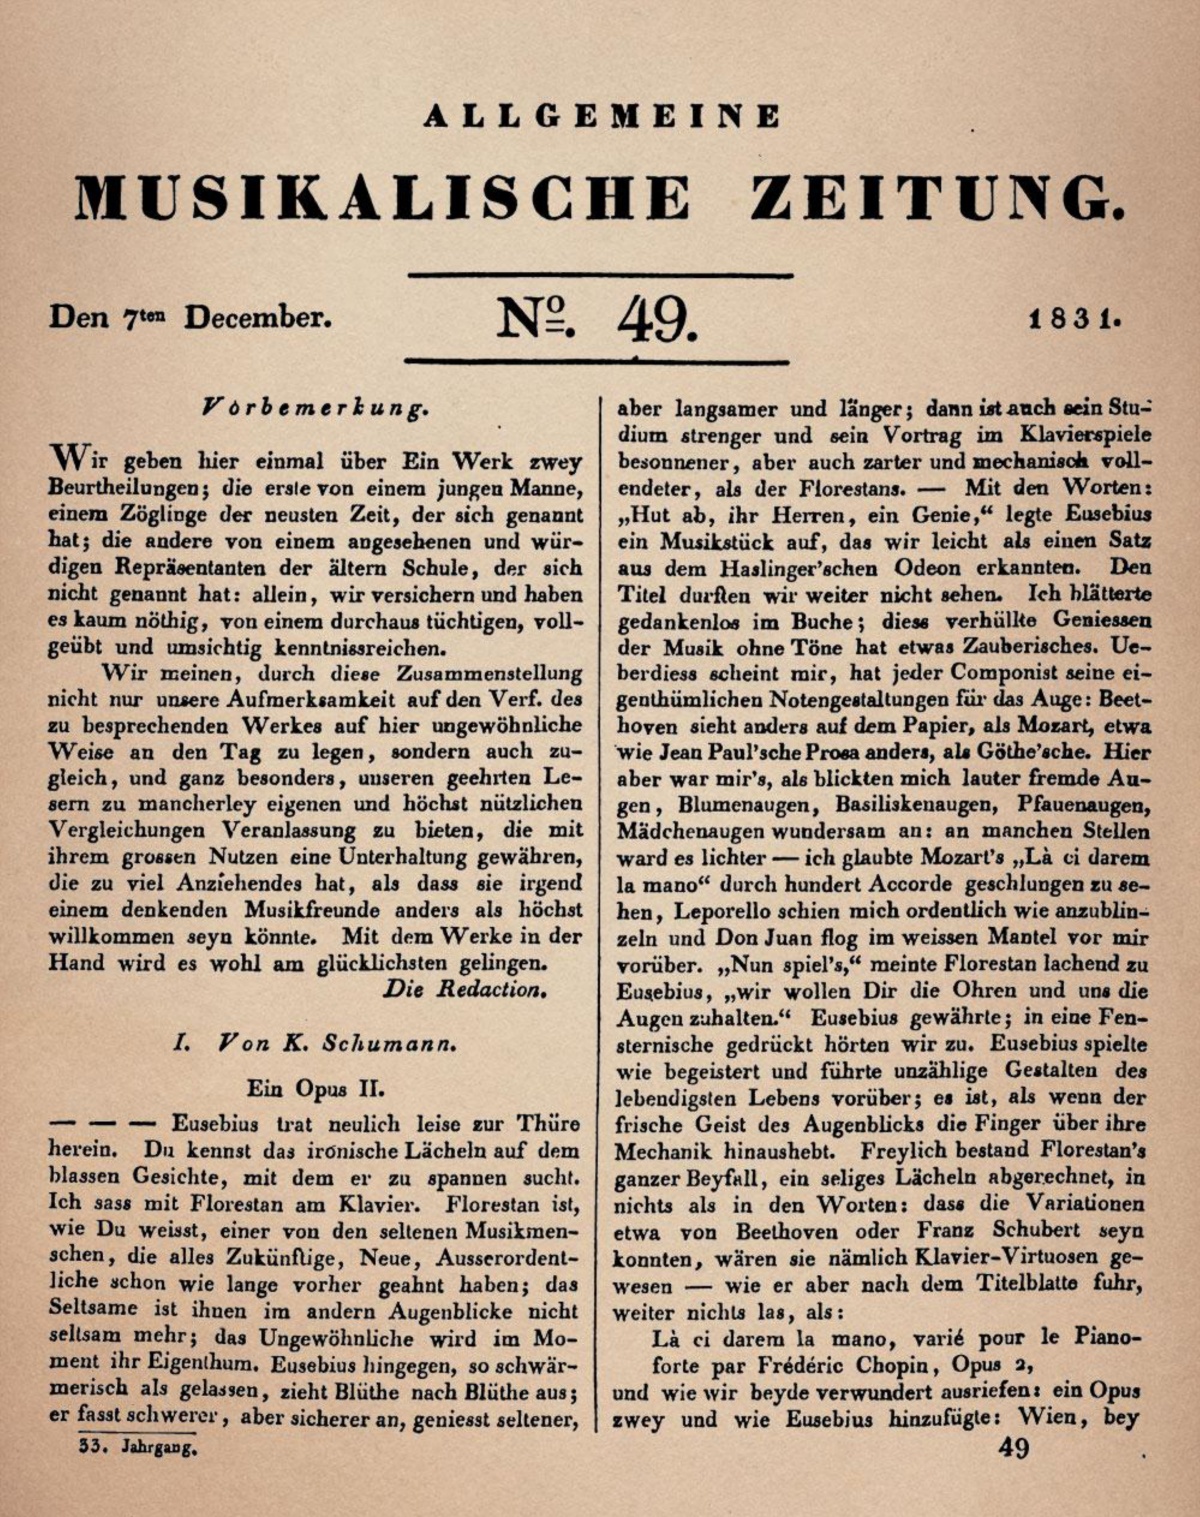 Texte de Robert Schumann sur l'opus 2 de Chopin publié dans l'«Allgemeine Musikalische Zeitung» du 07 décembre 1831